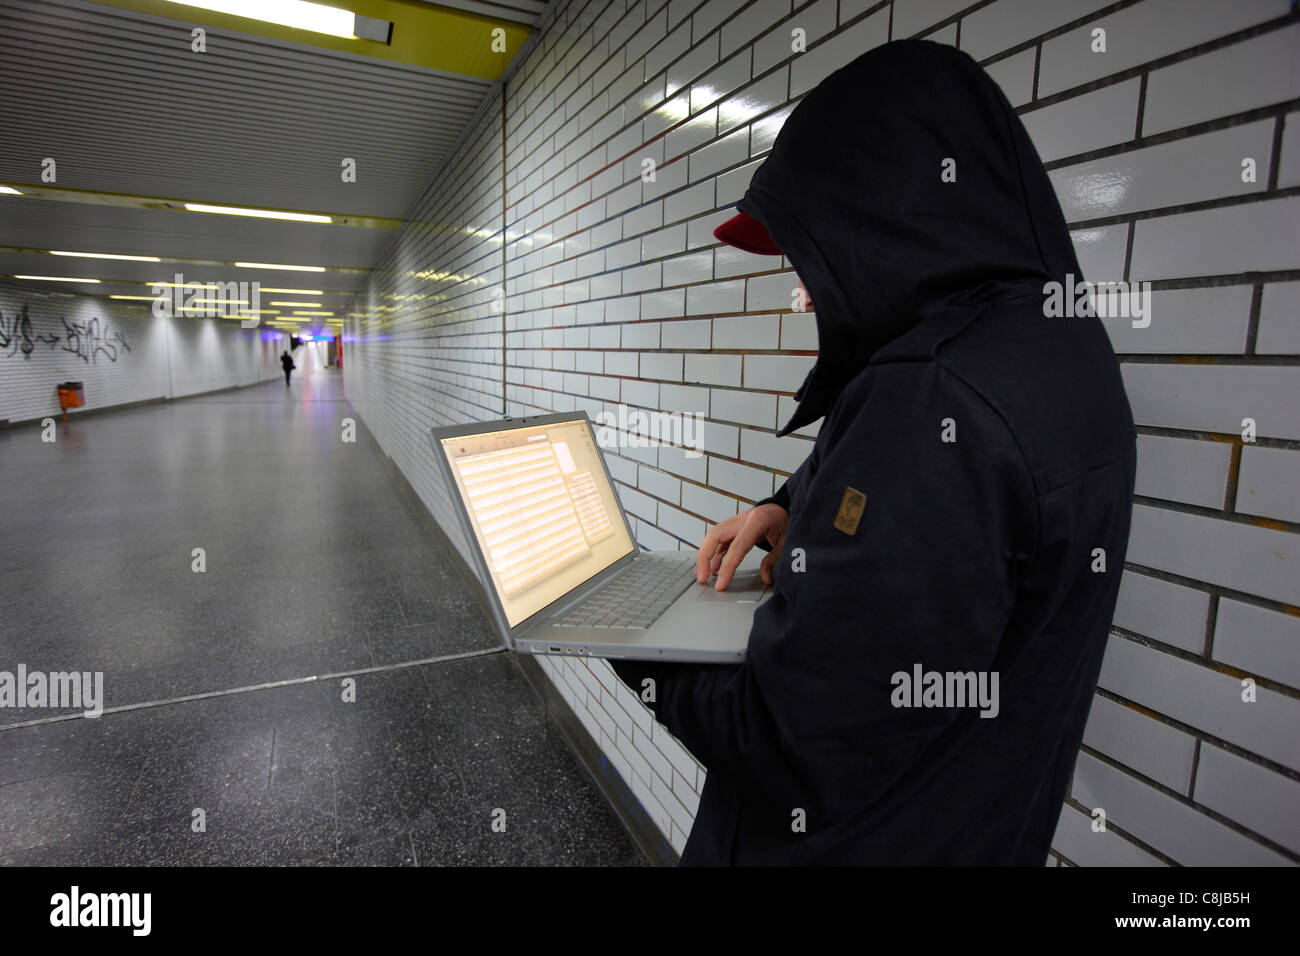 En informatique, hacker, siège de conspirateur avec un ordinateur portable, dans une station de métro. Photo symbole, de la criminalité sur Internet. Banque D'Images